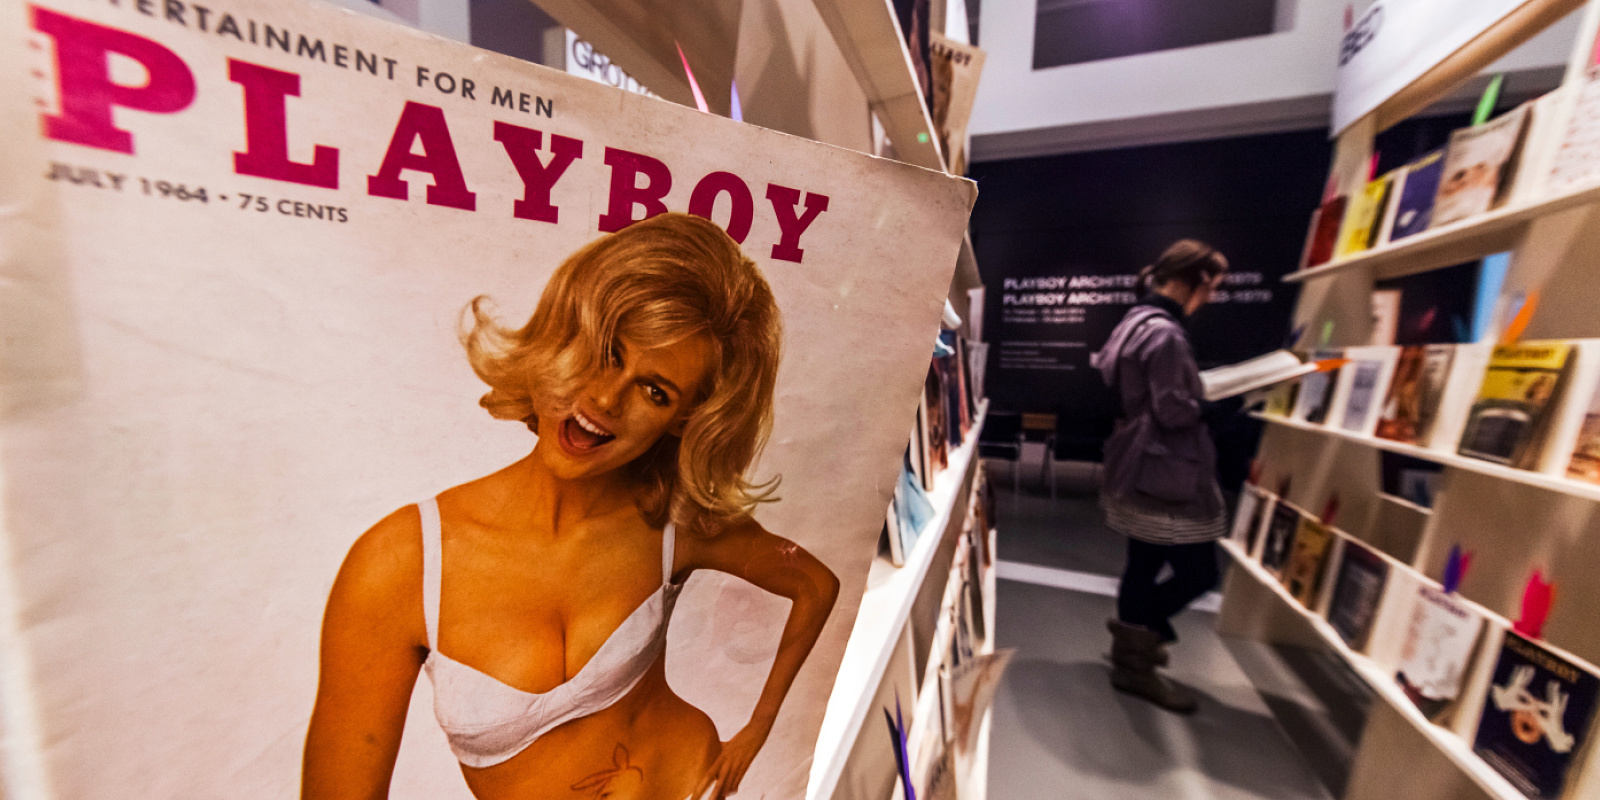 Exposition « Playboy Architektur », Musée allemand darchitecture, Francfort